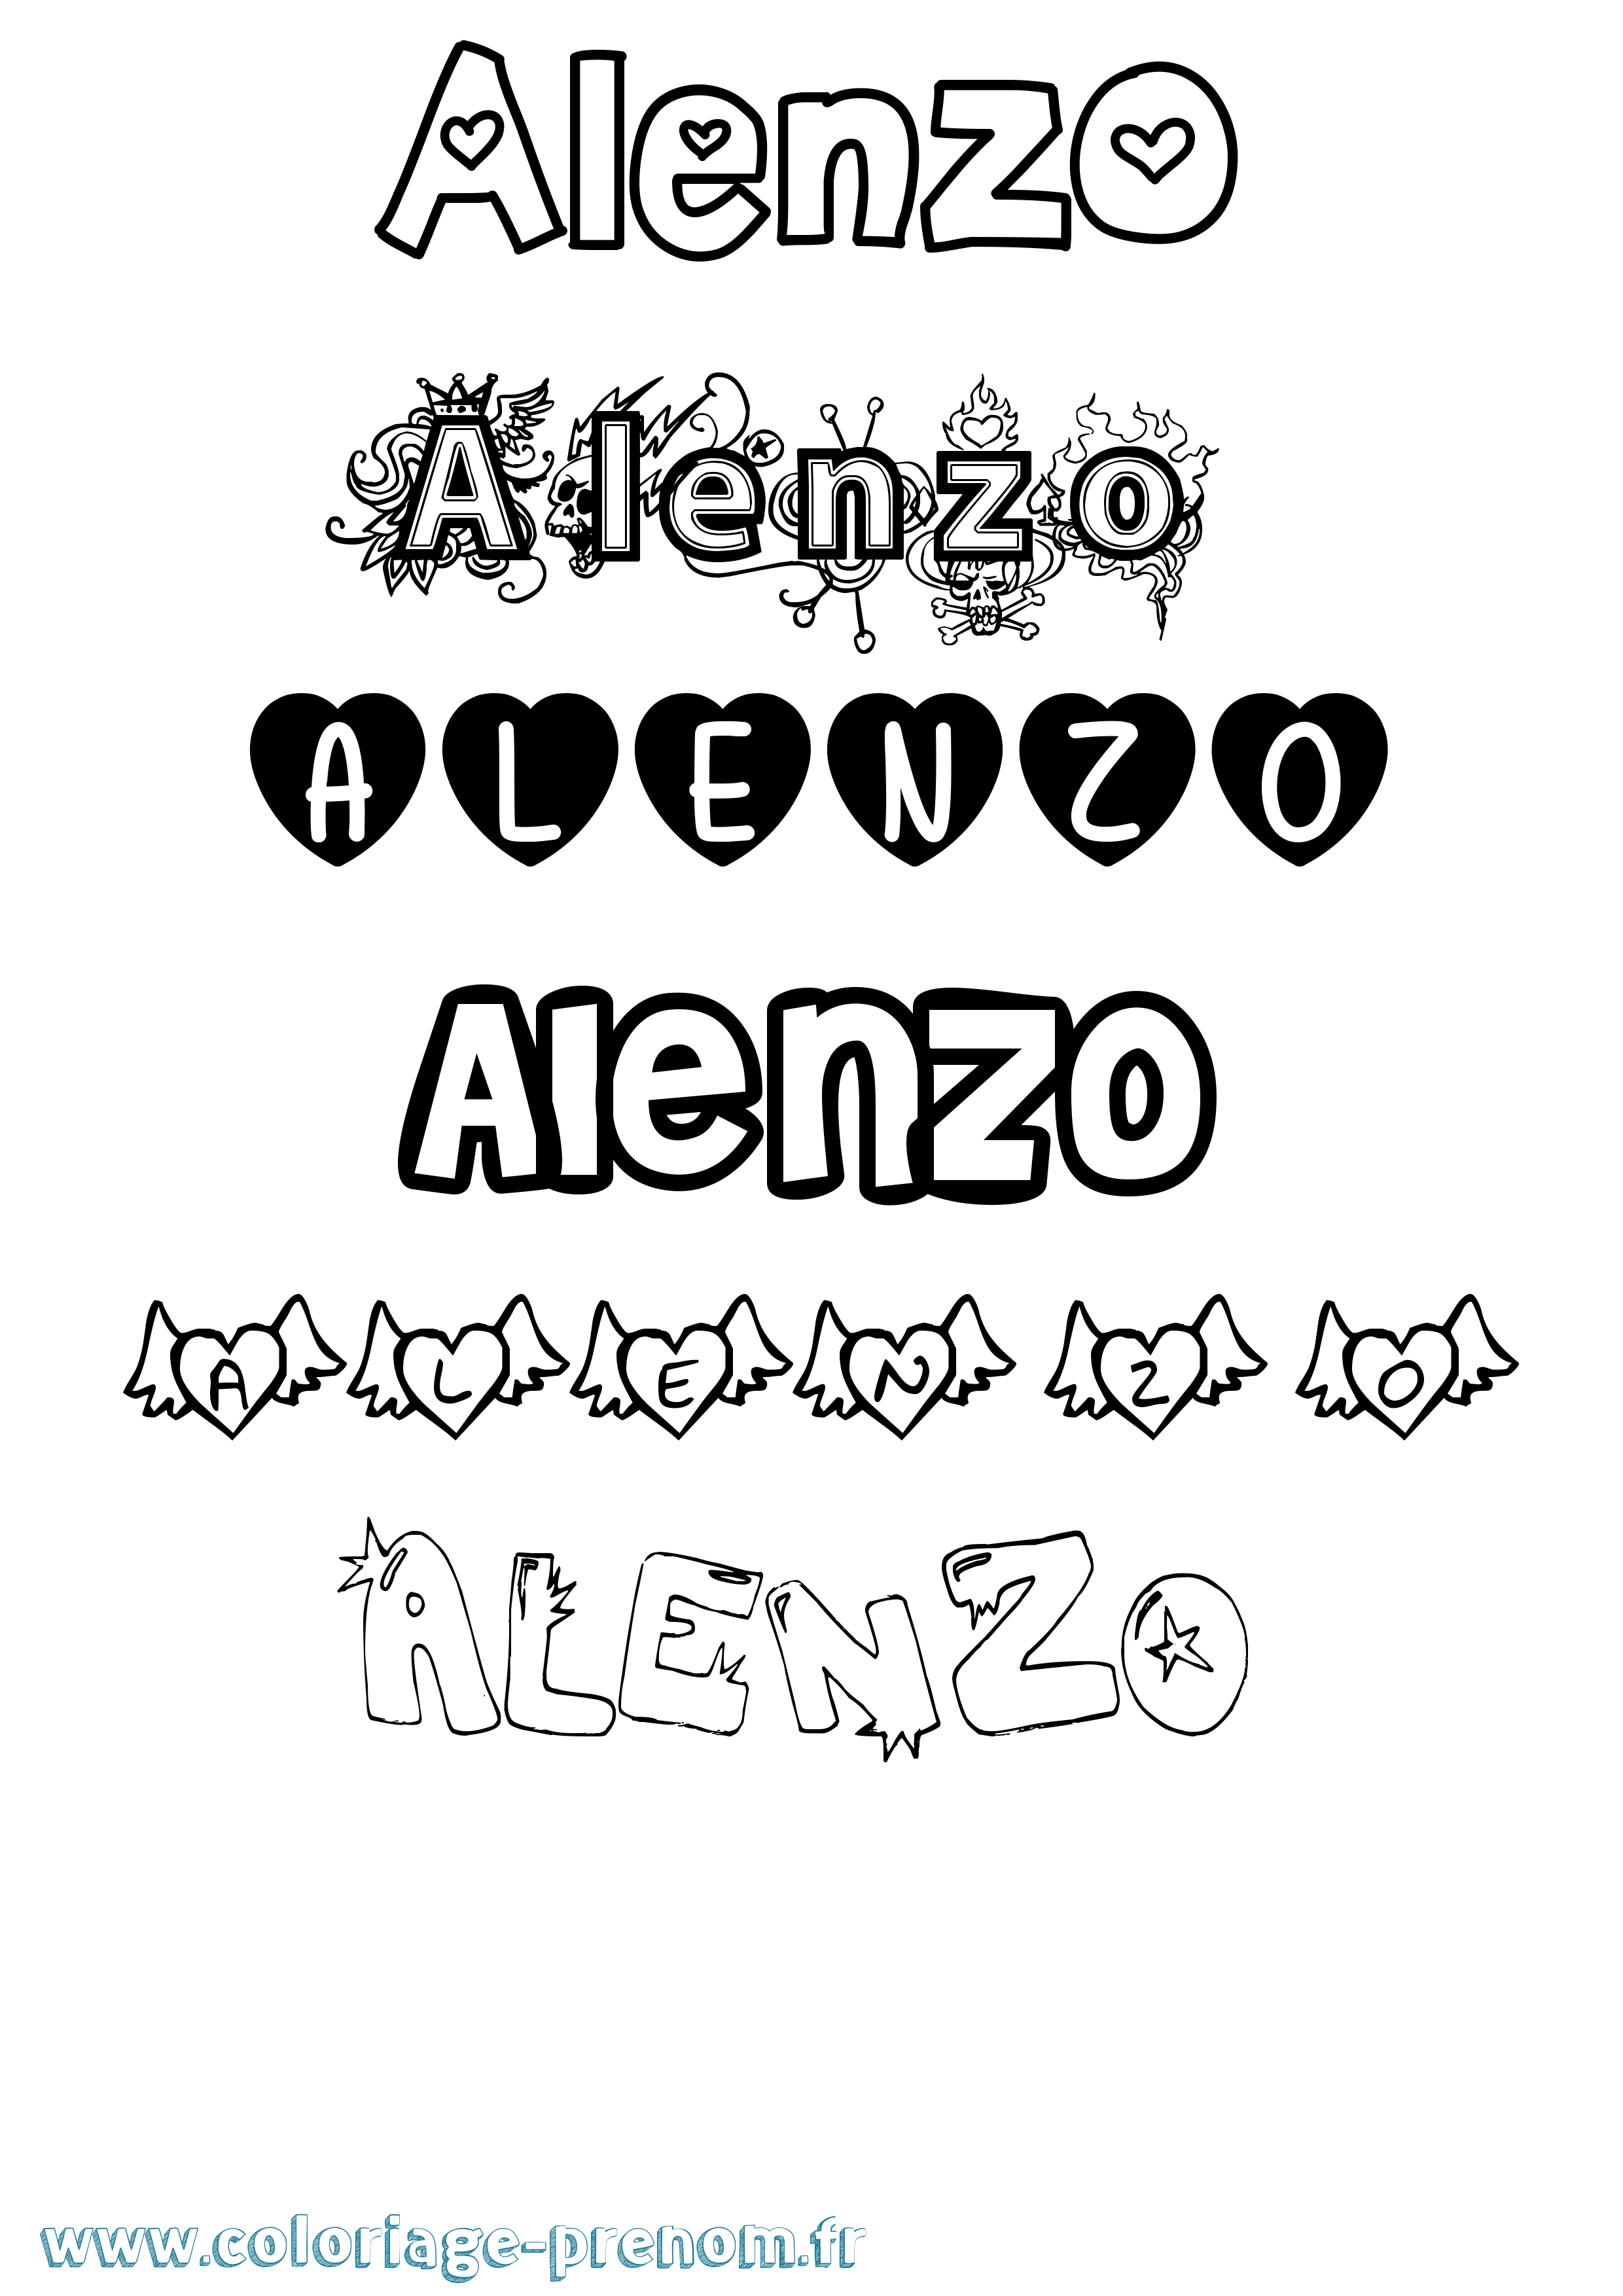 Coloriage prénom Alenzo Girly